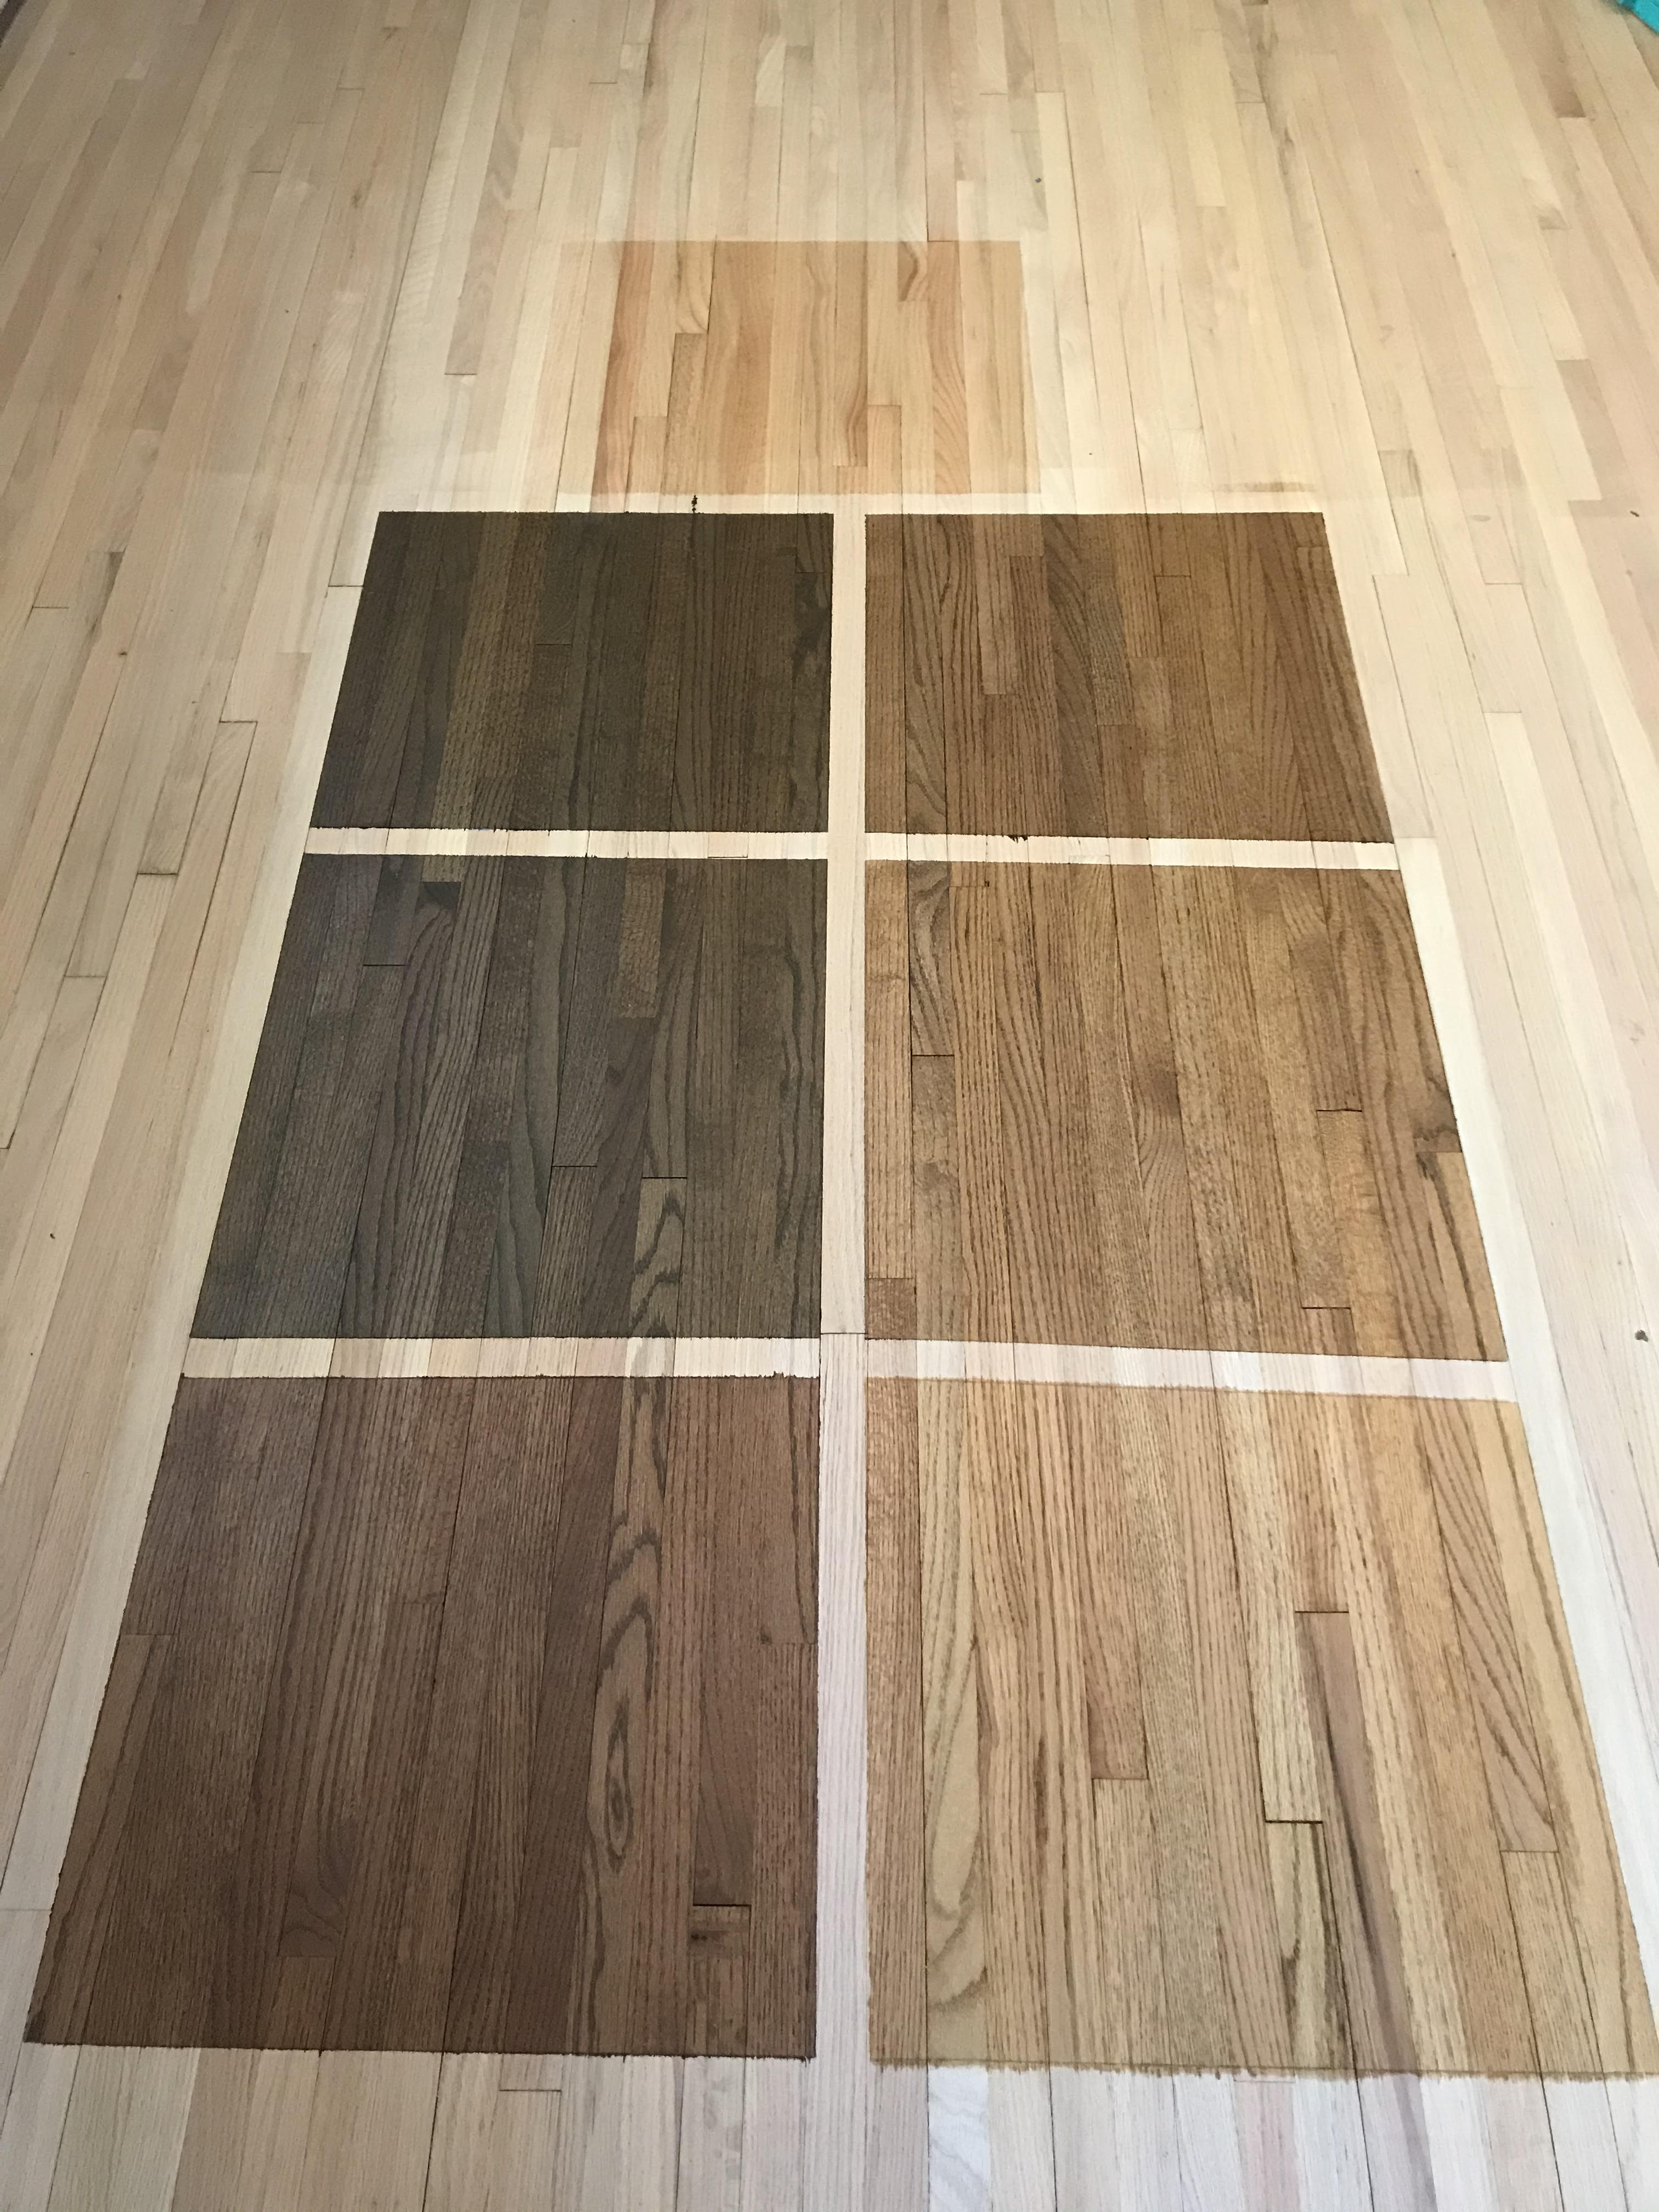 Hardwood Floor Refinishing Ub, Sanding And Refinishing Hardwood Floors